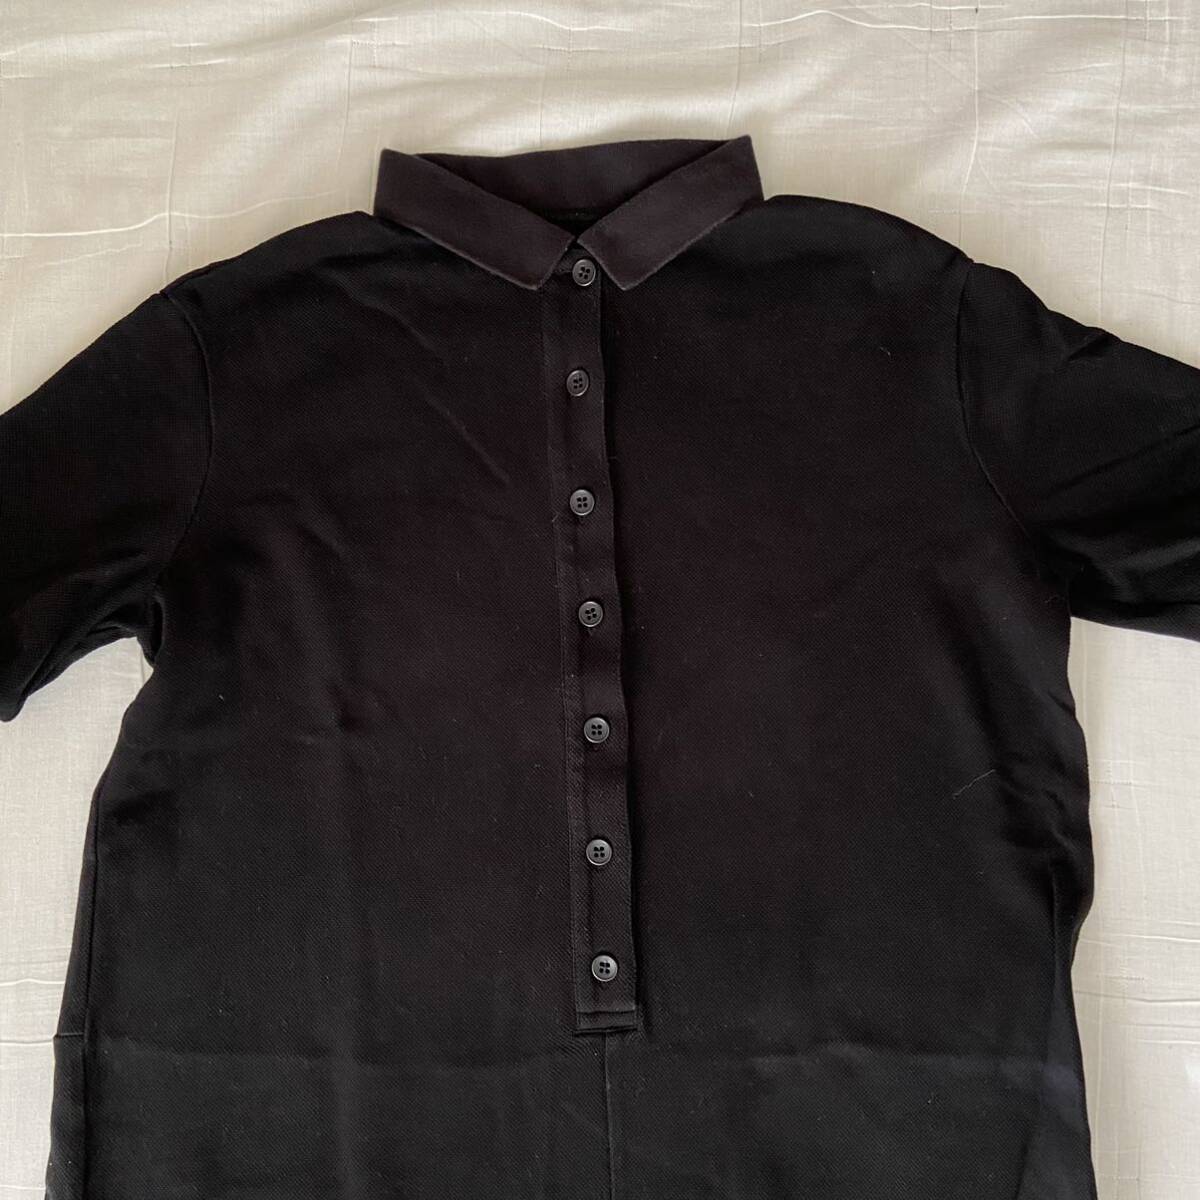 ジャーナルスタンダード ラックス luxe 半袖 かのこ オールインワン 黒 ブラック つなぎ ポロシャツ パンツの画像3